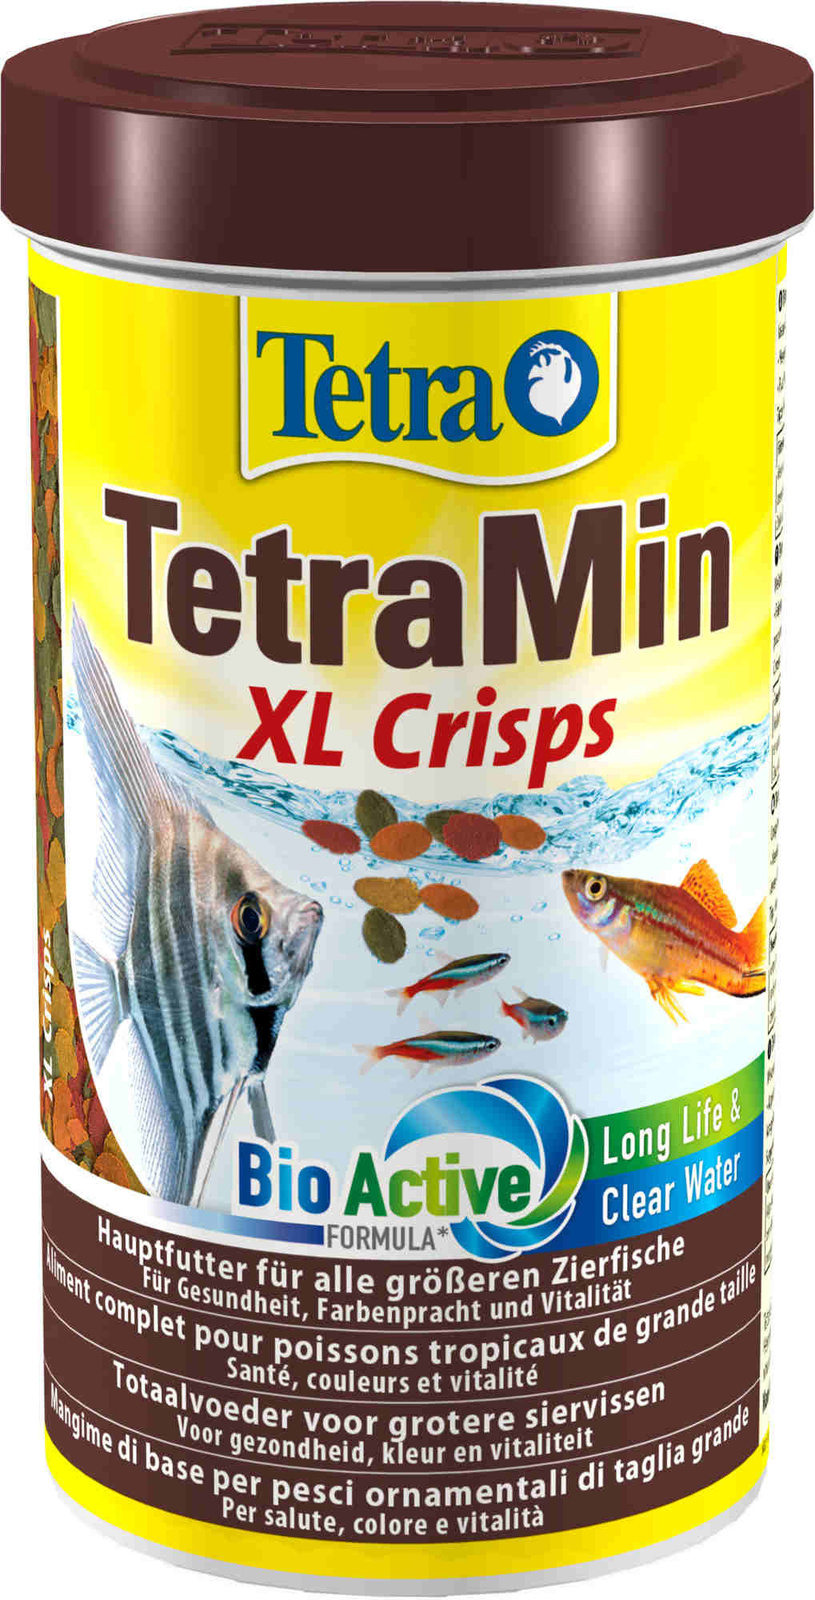 Tetra (корма) Tetra (корма) корм для всех видов крупных рыб, крупные чипсы (100 г) tetra корма tetra корма корм для всех видов мелких рыб четыре вида корма 65 г